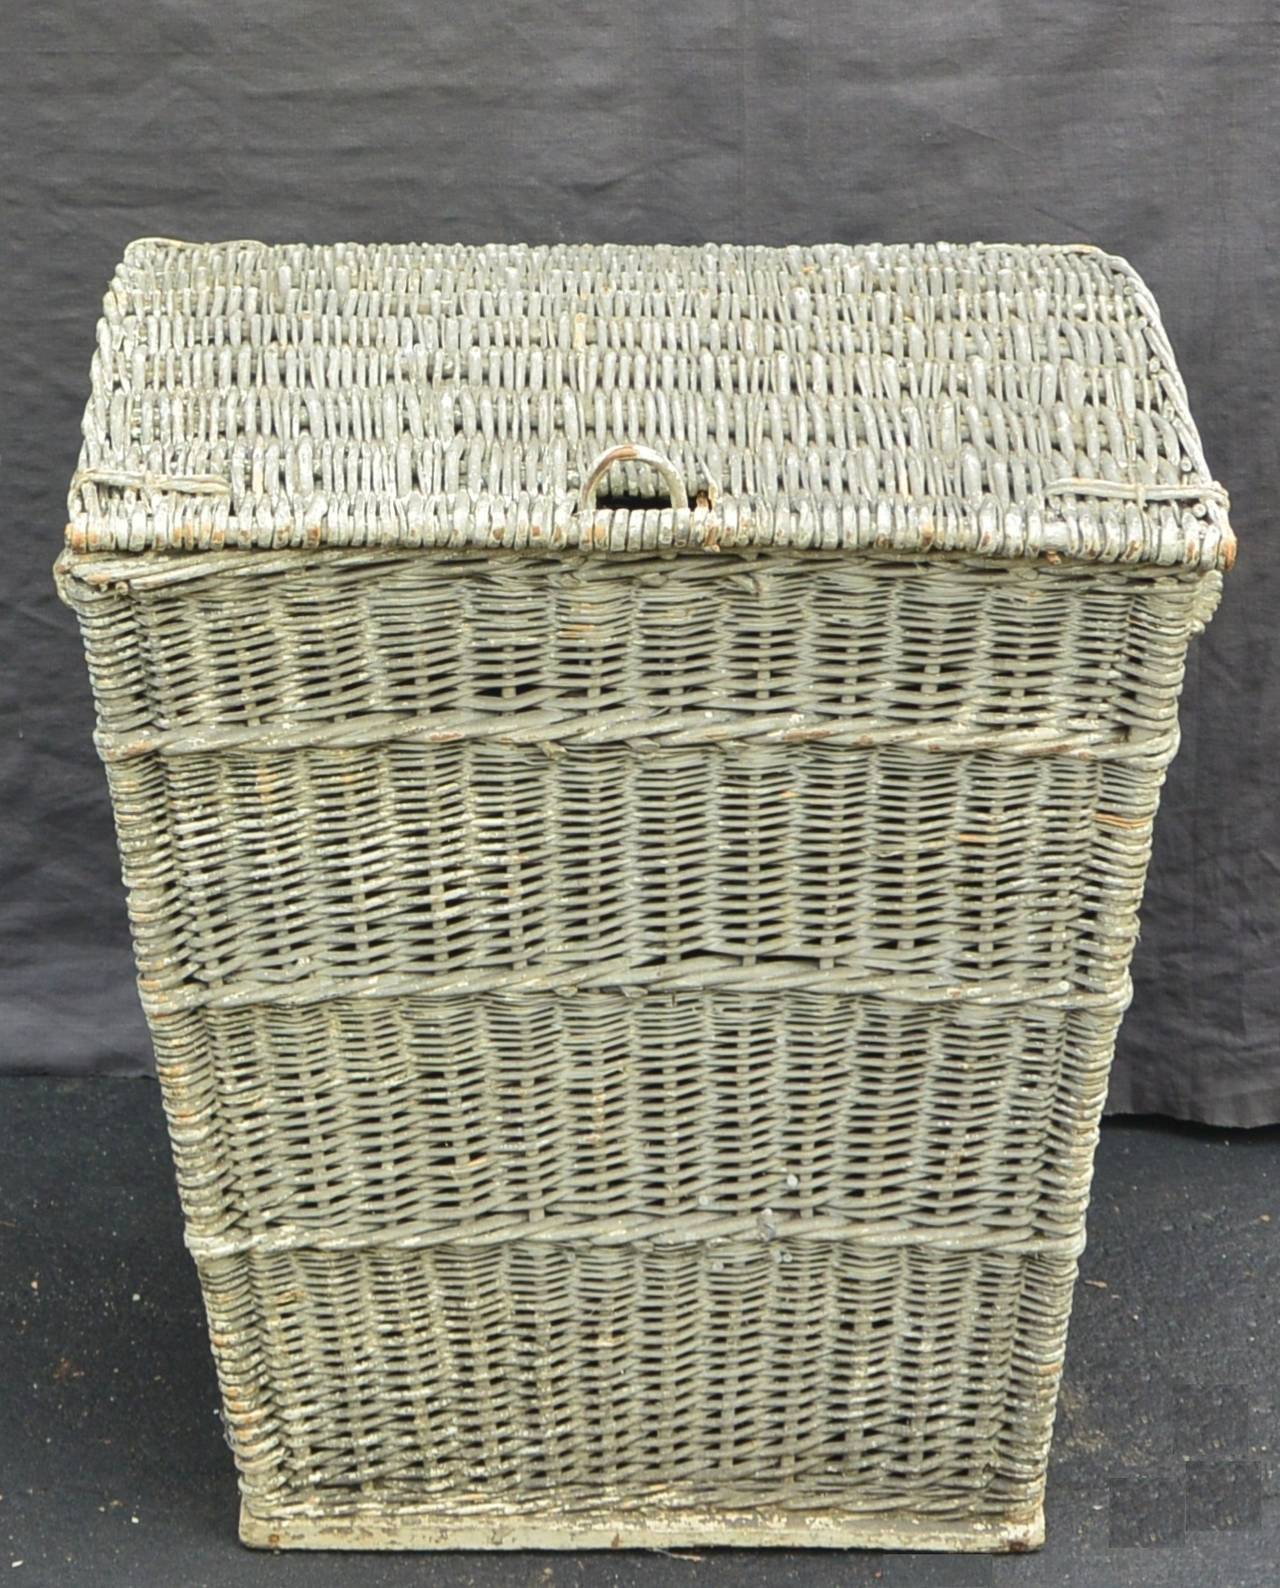 American Large Painted Wicker Basket